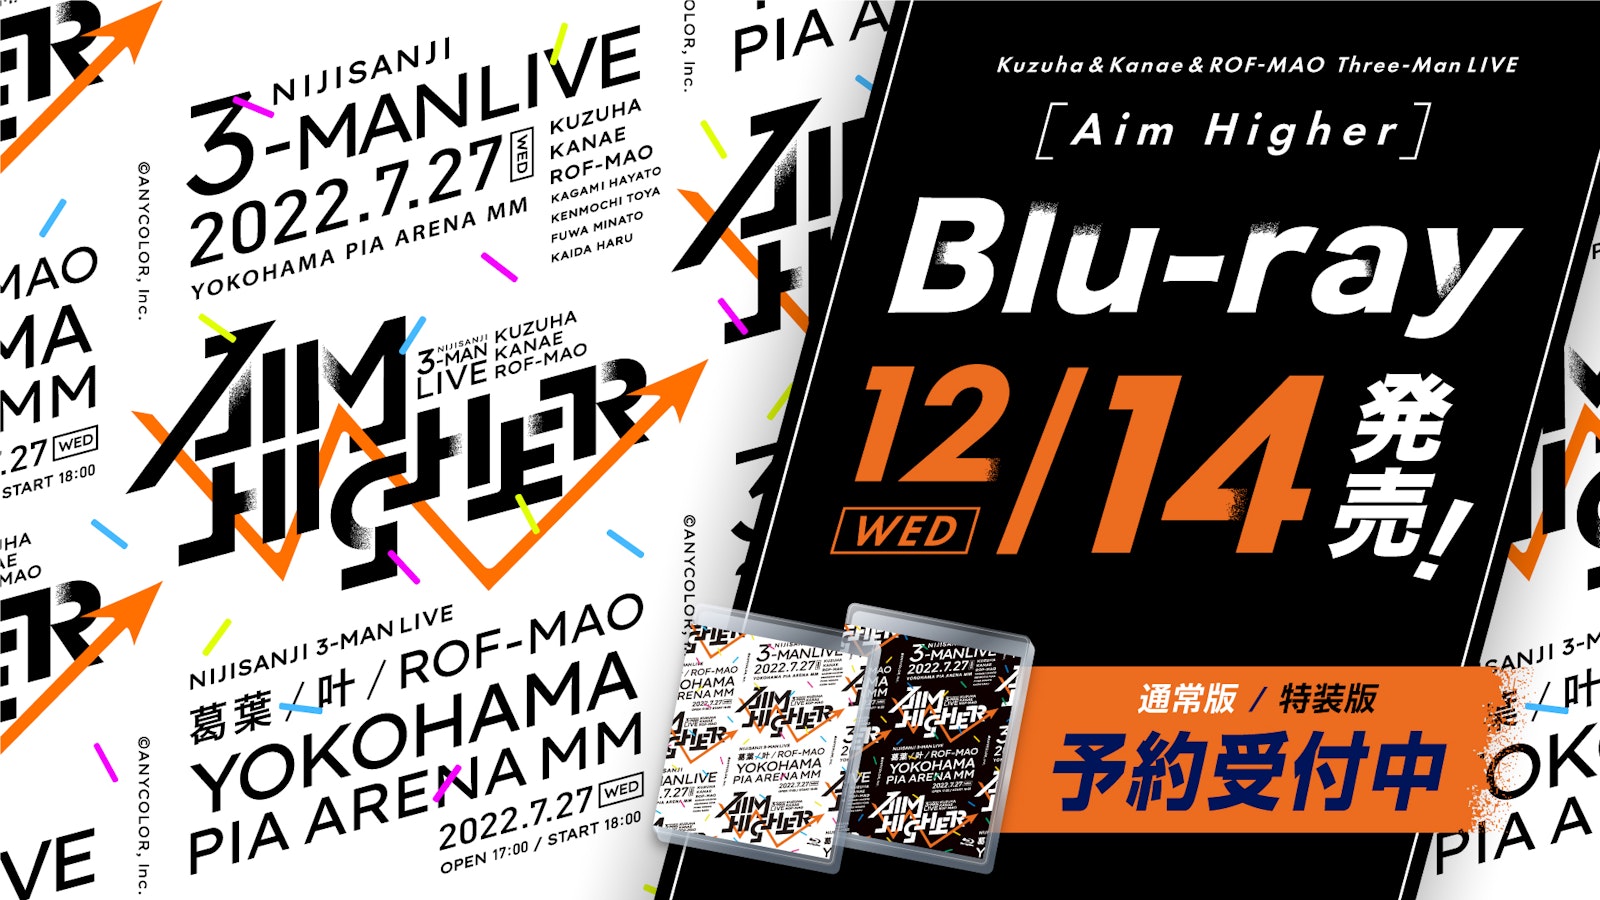 Kuzuha & Kanae & ROF-MAO Three-Man LIVE「Aim Higher」』Blu-rayが 